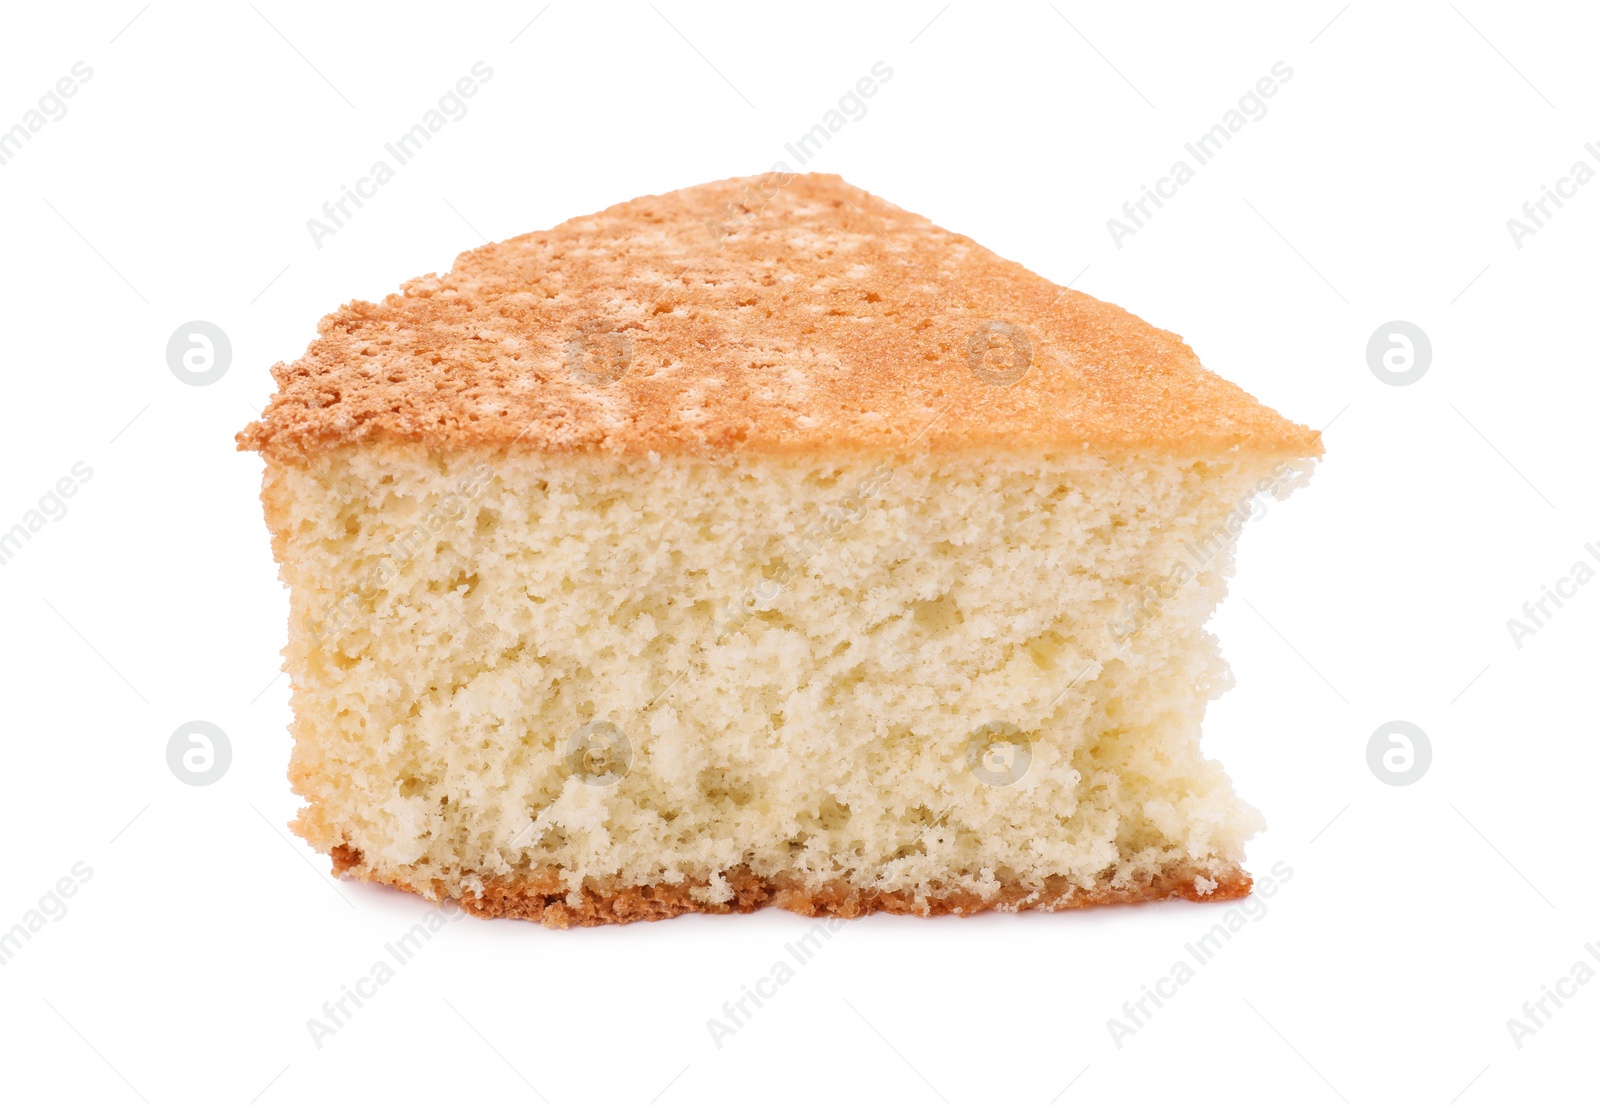 Photo of Piece of tasty sponge cake isolated on white